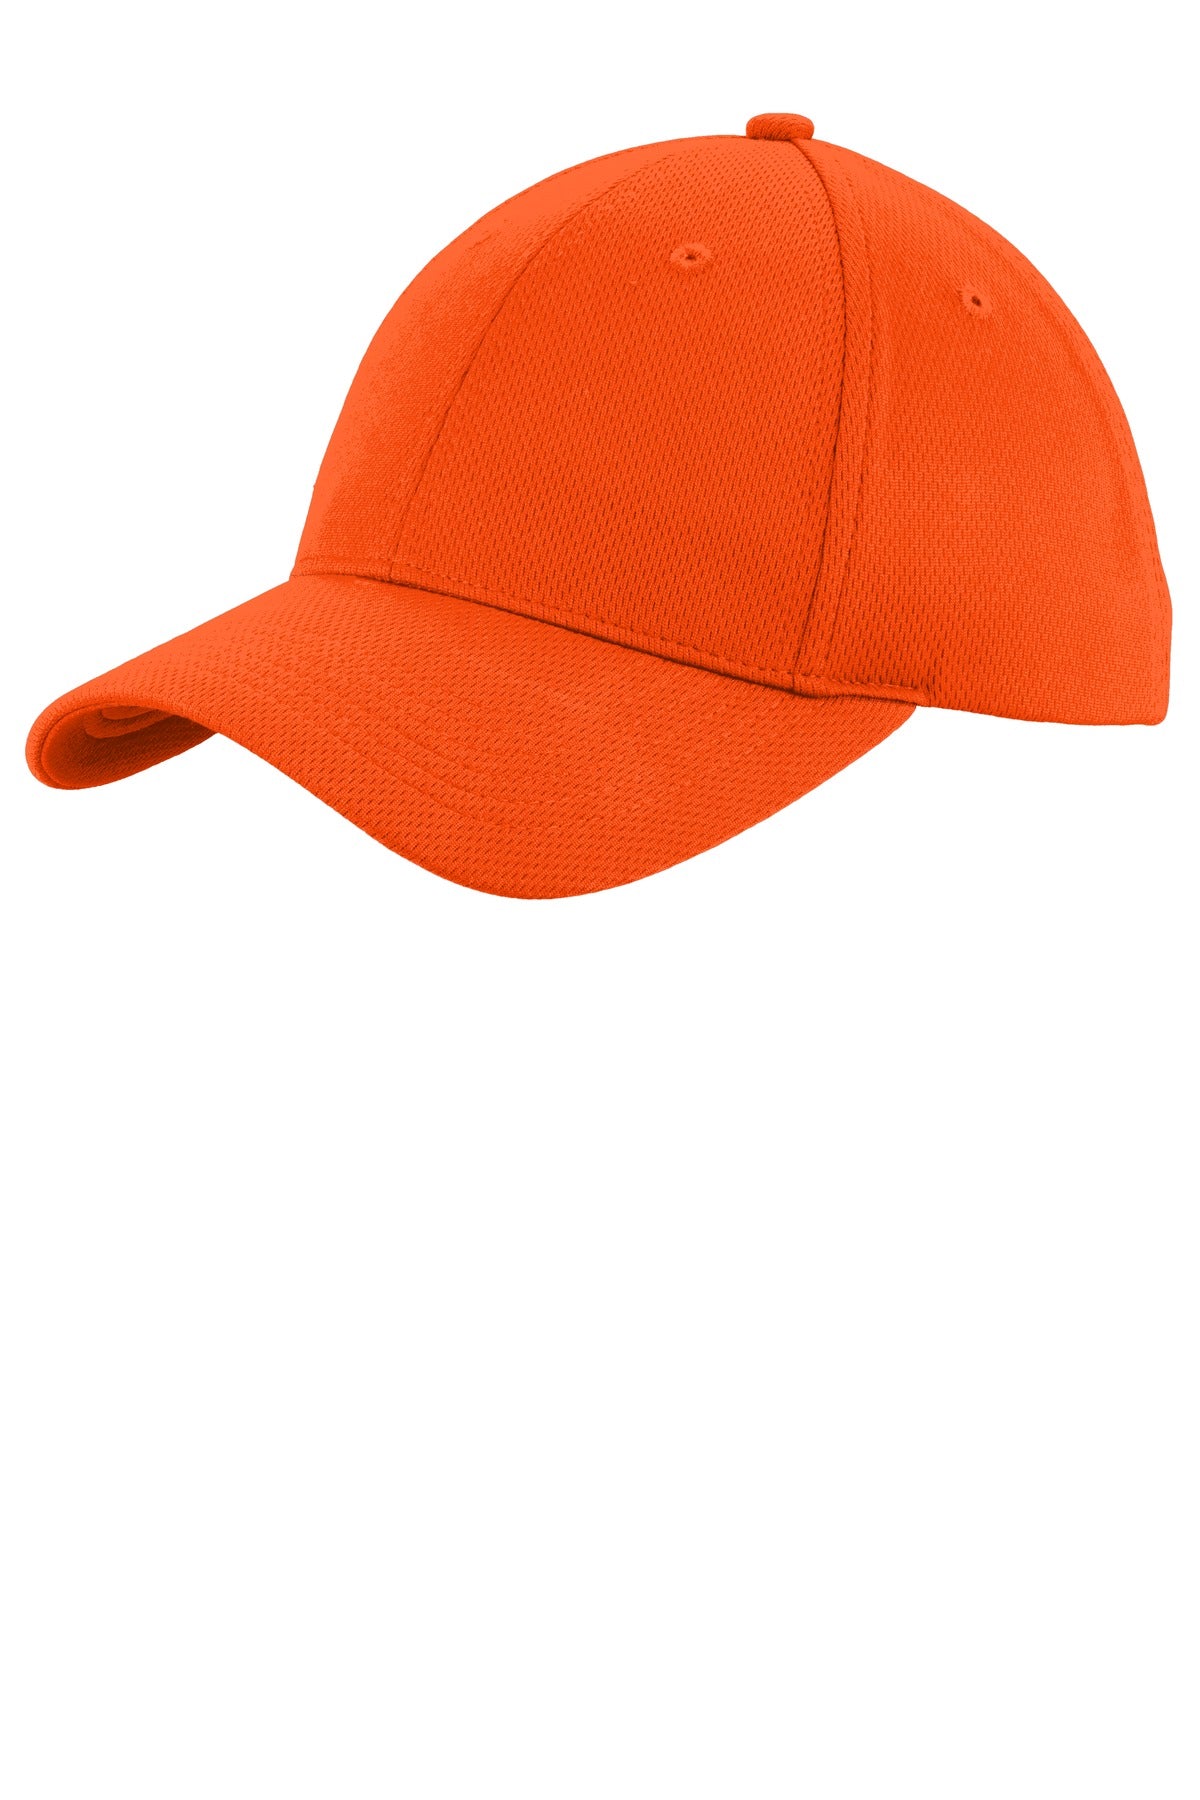 Caps Neon Orange OSFA Sport-Tek